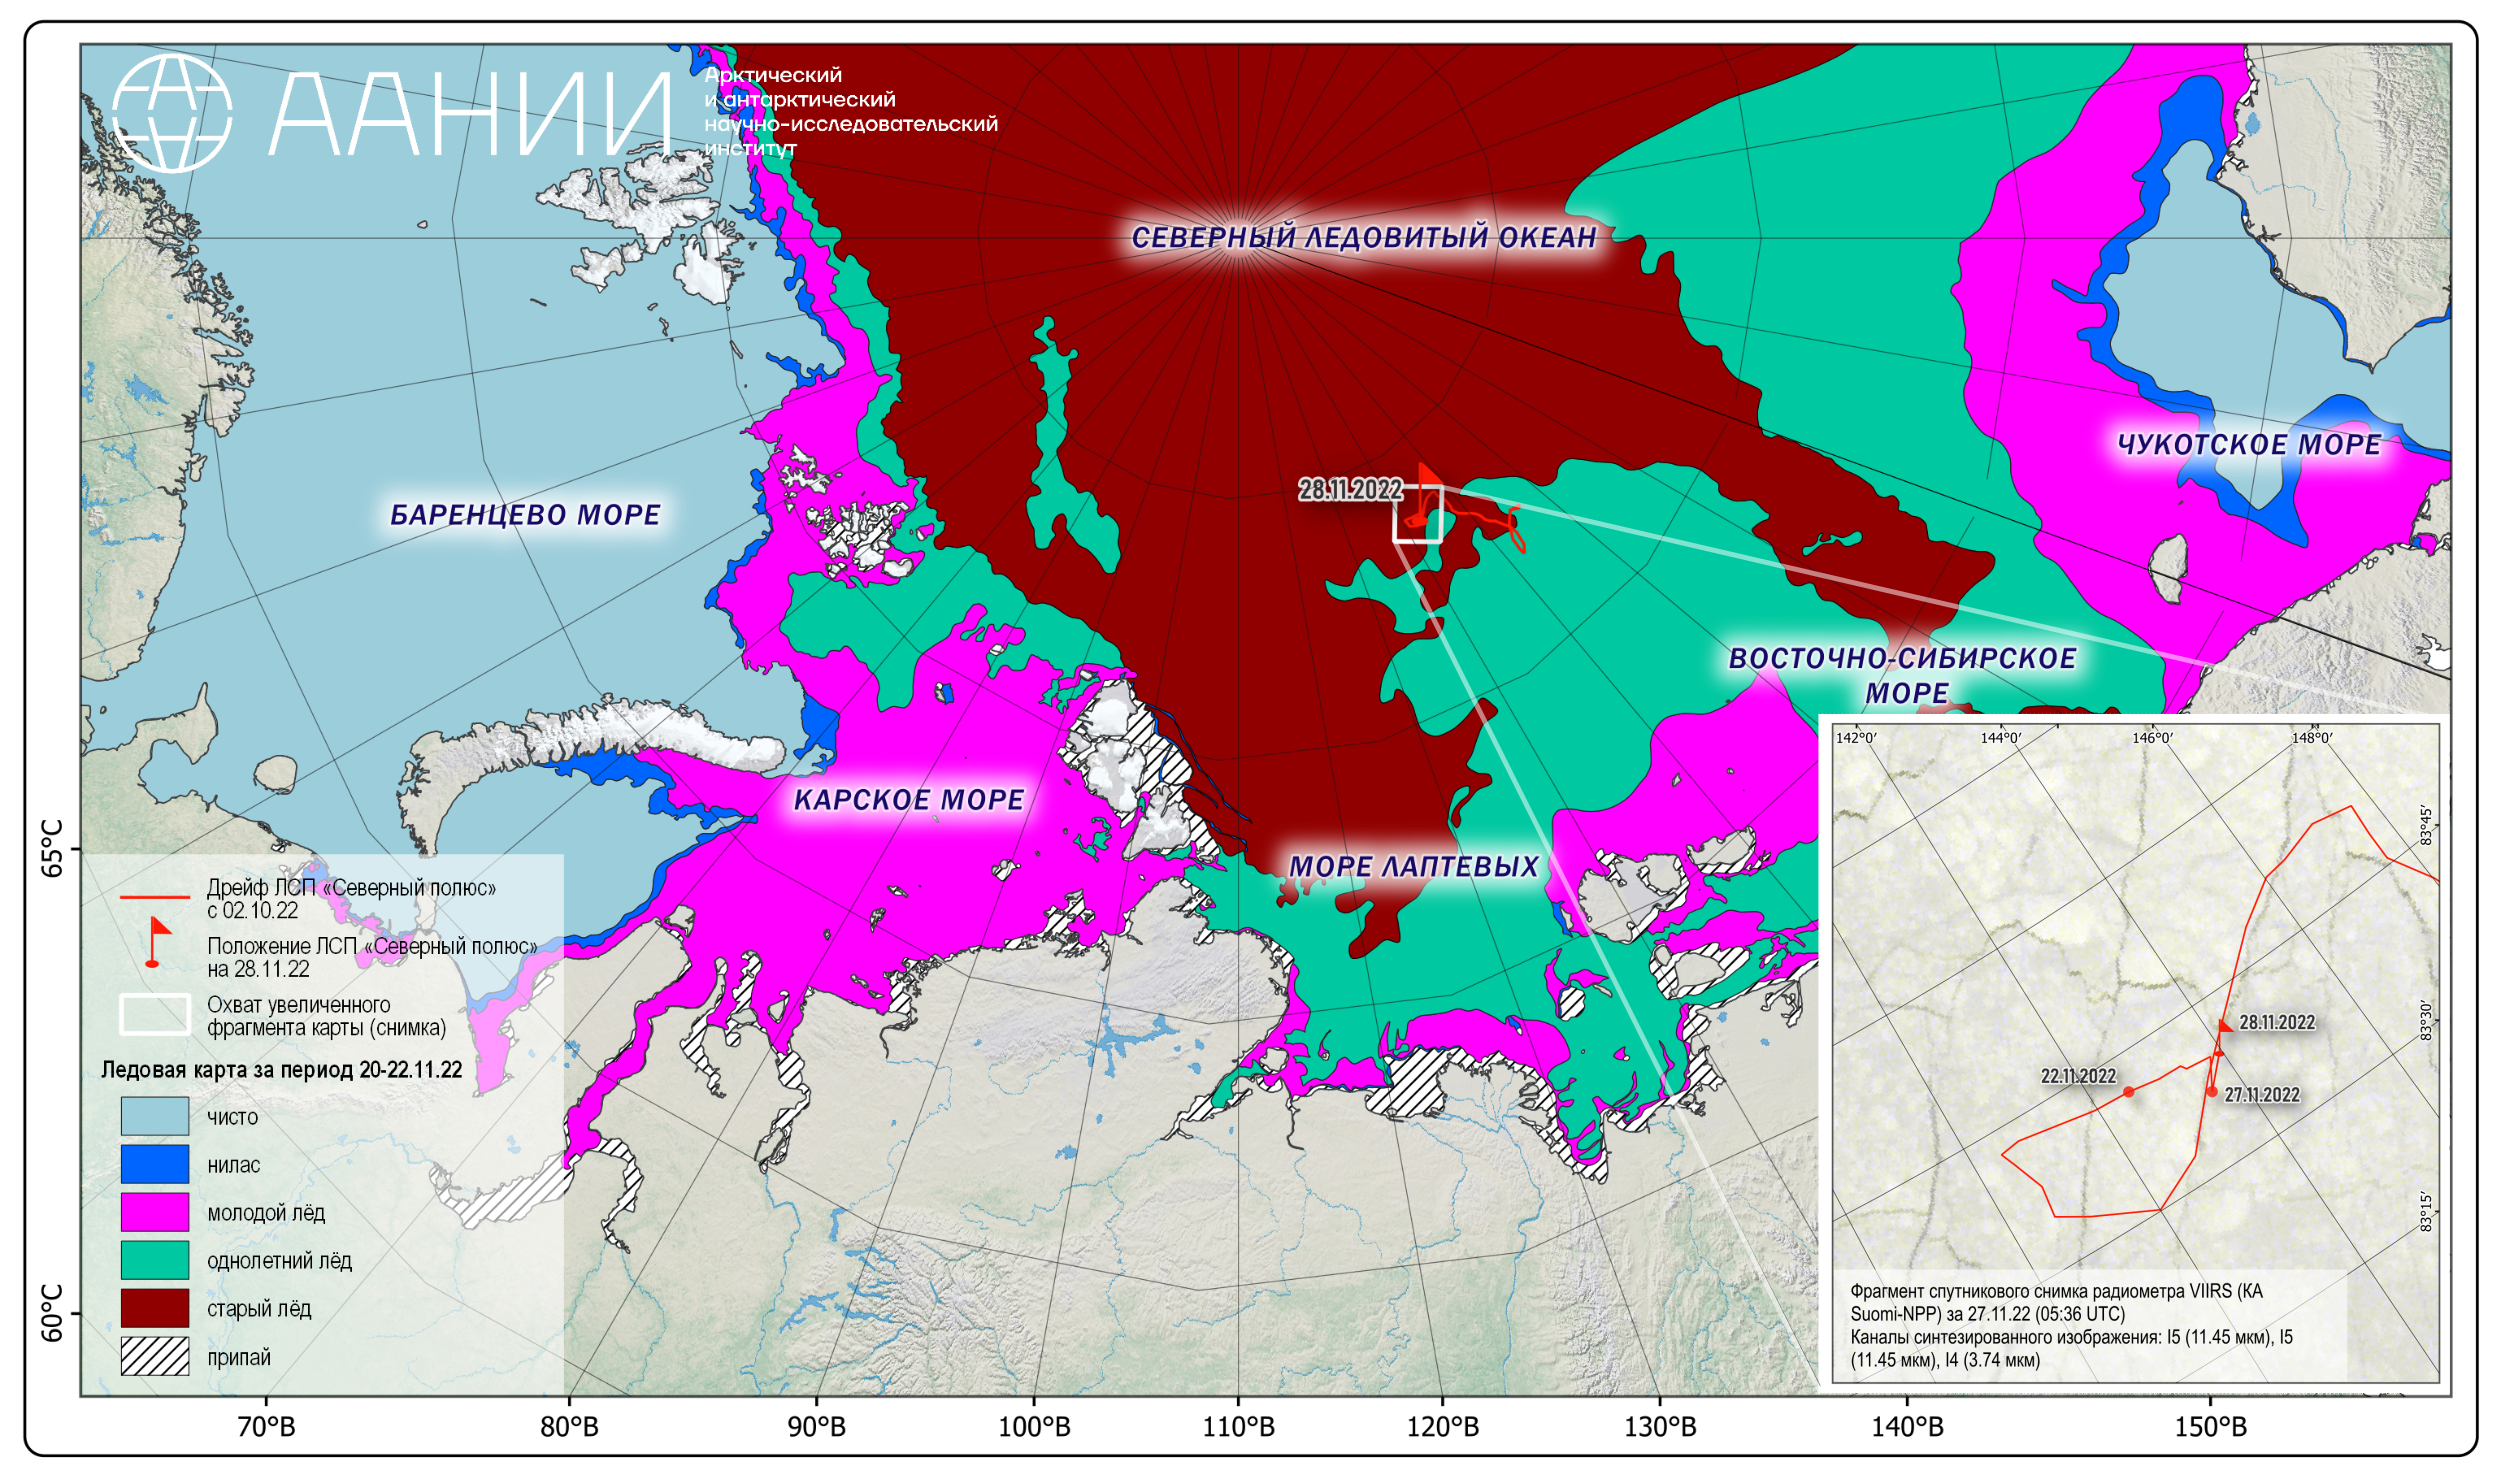 Ледовые карты. Северный полюс 41 карта дрейфа. Карта ледовой обстановки. Дрейф полярной станции Северный полюс на карте. Мониторинг ледовой обстановки.